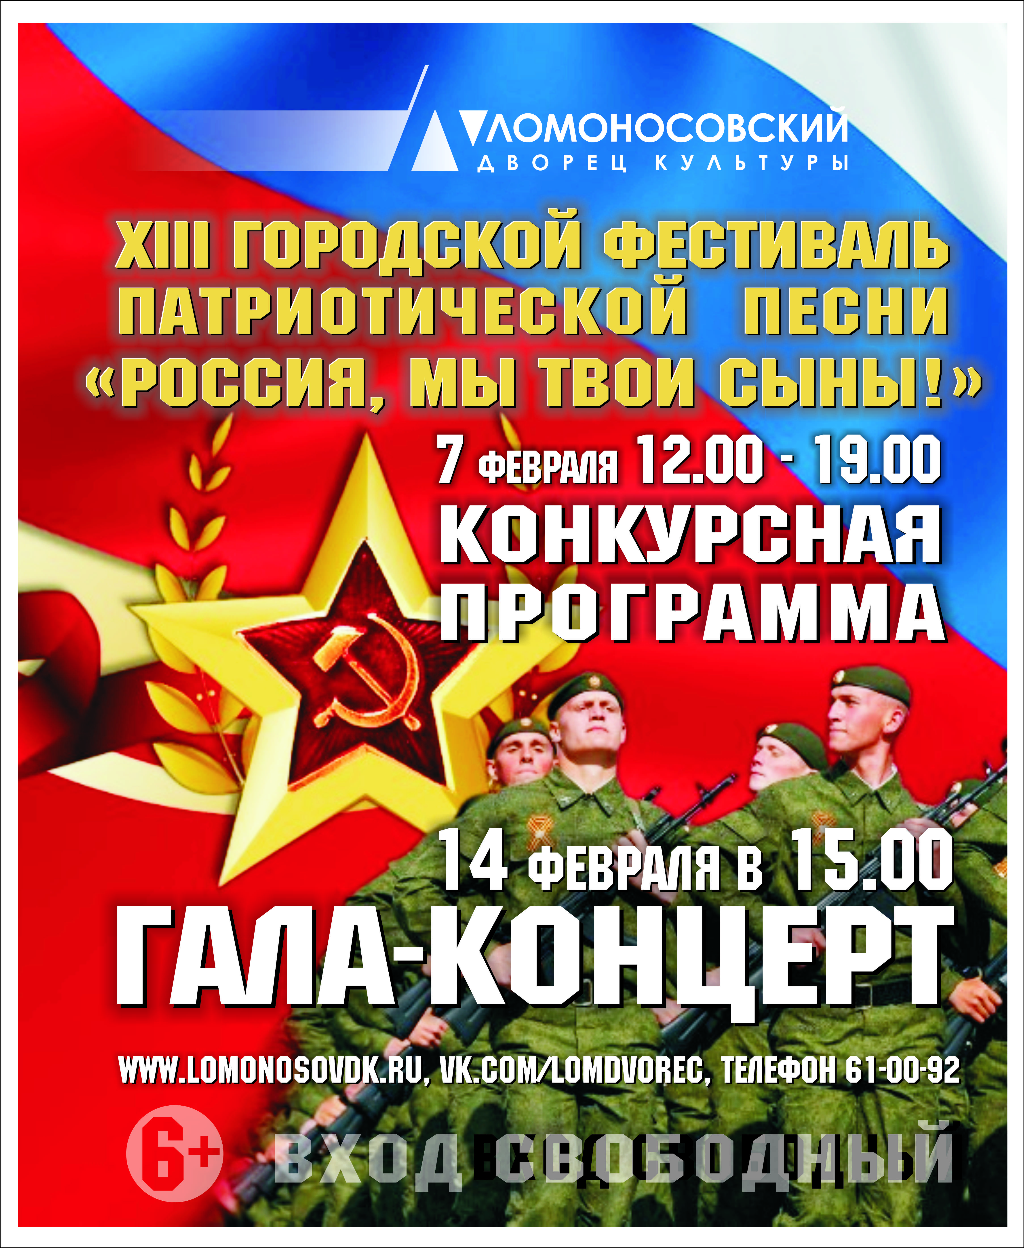 Фестиваль «Россия, мы твои сыны» стартует в феврале